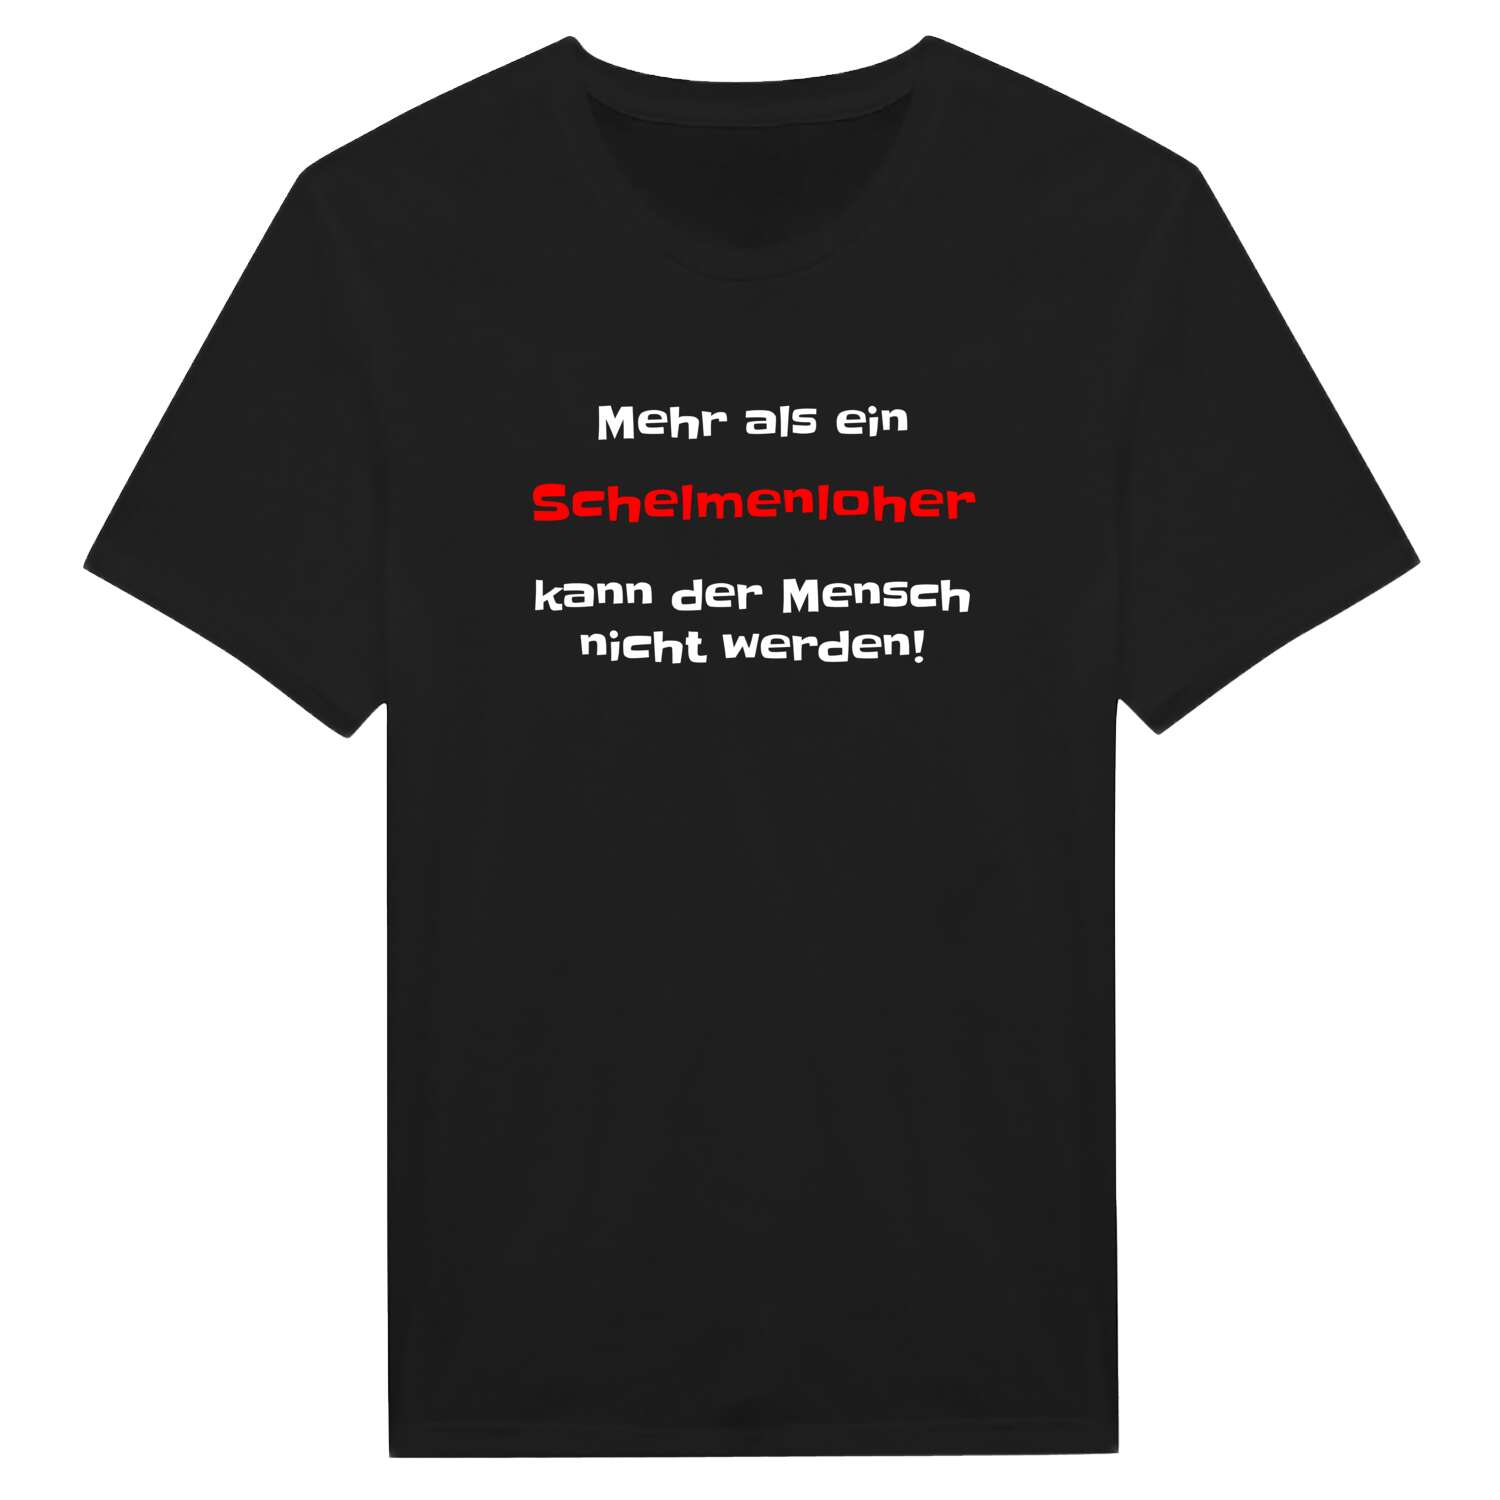 Schelmenloh T-Shirt »Mehr als ein«